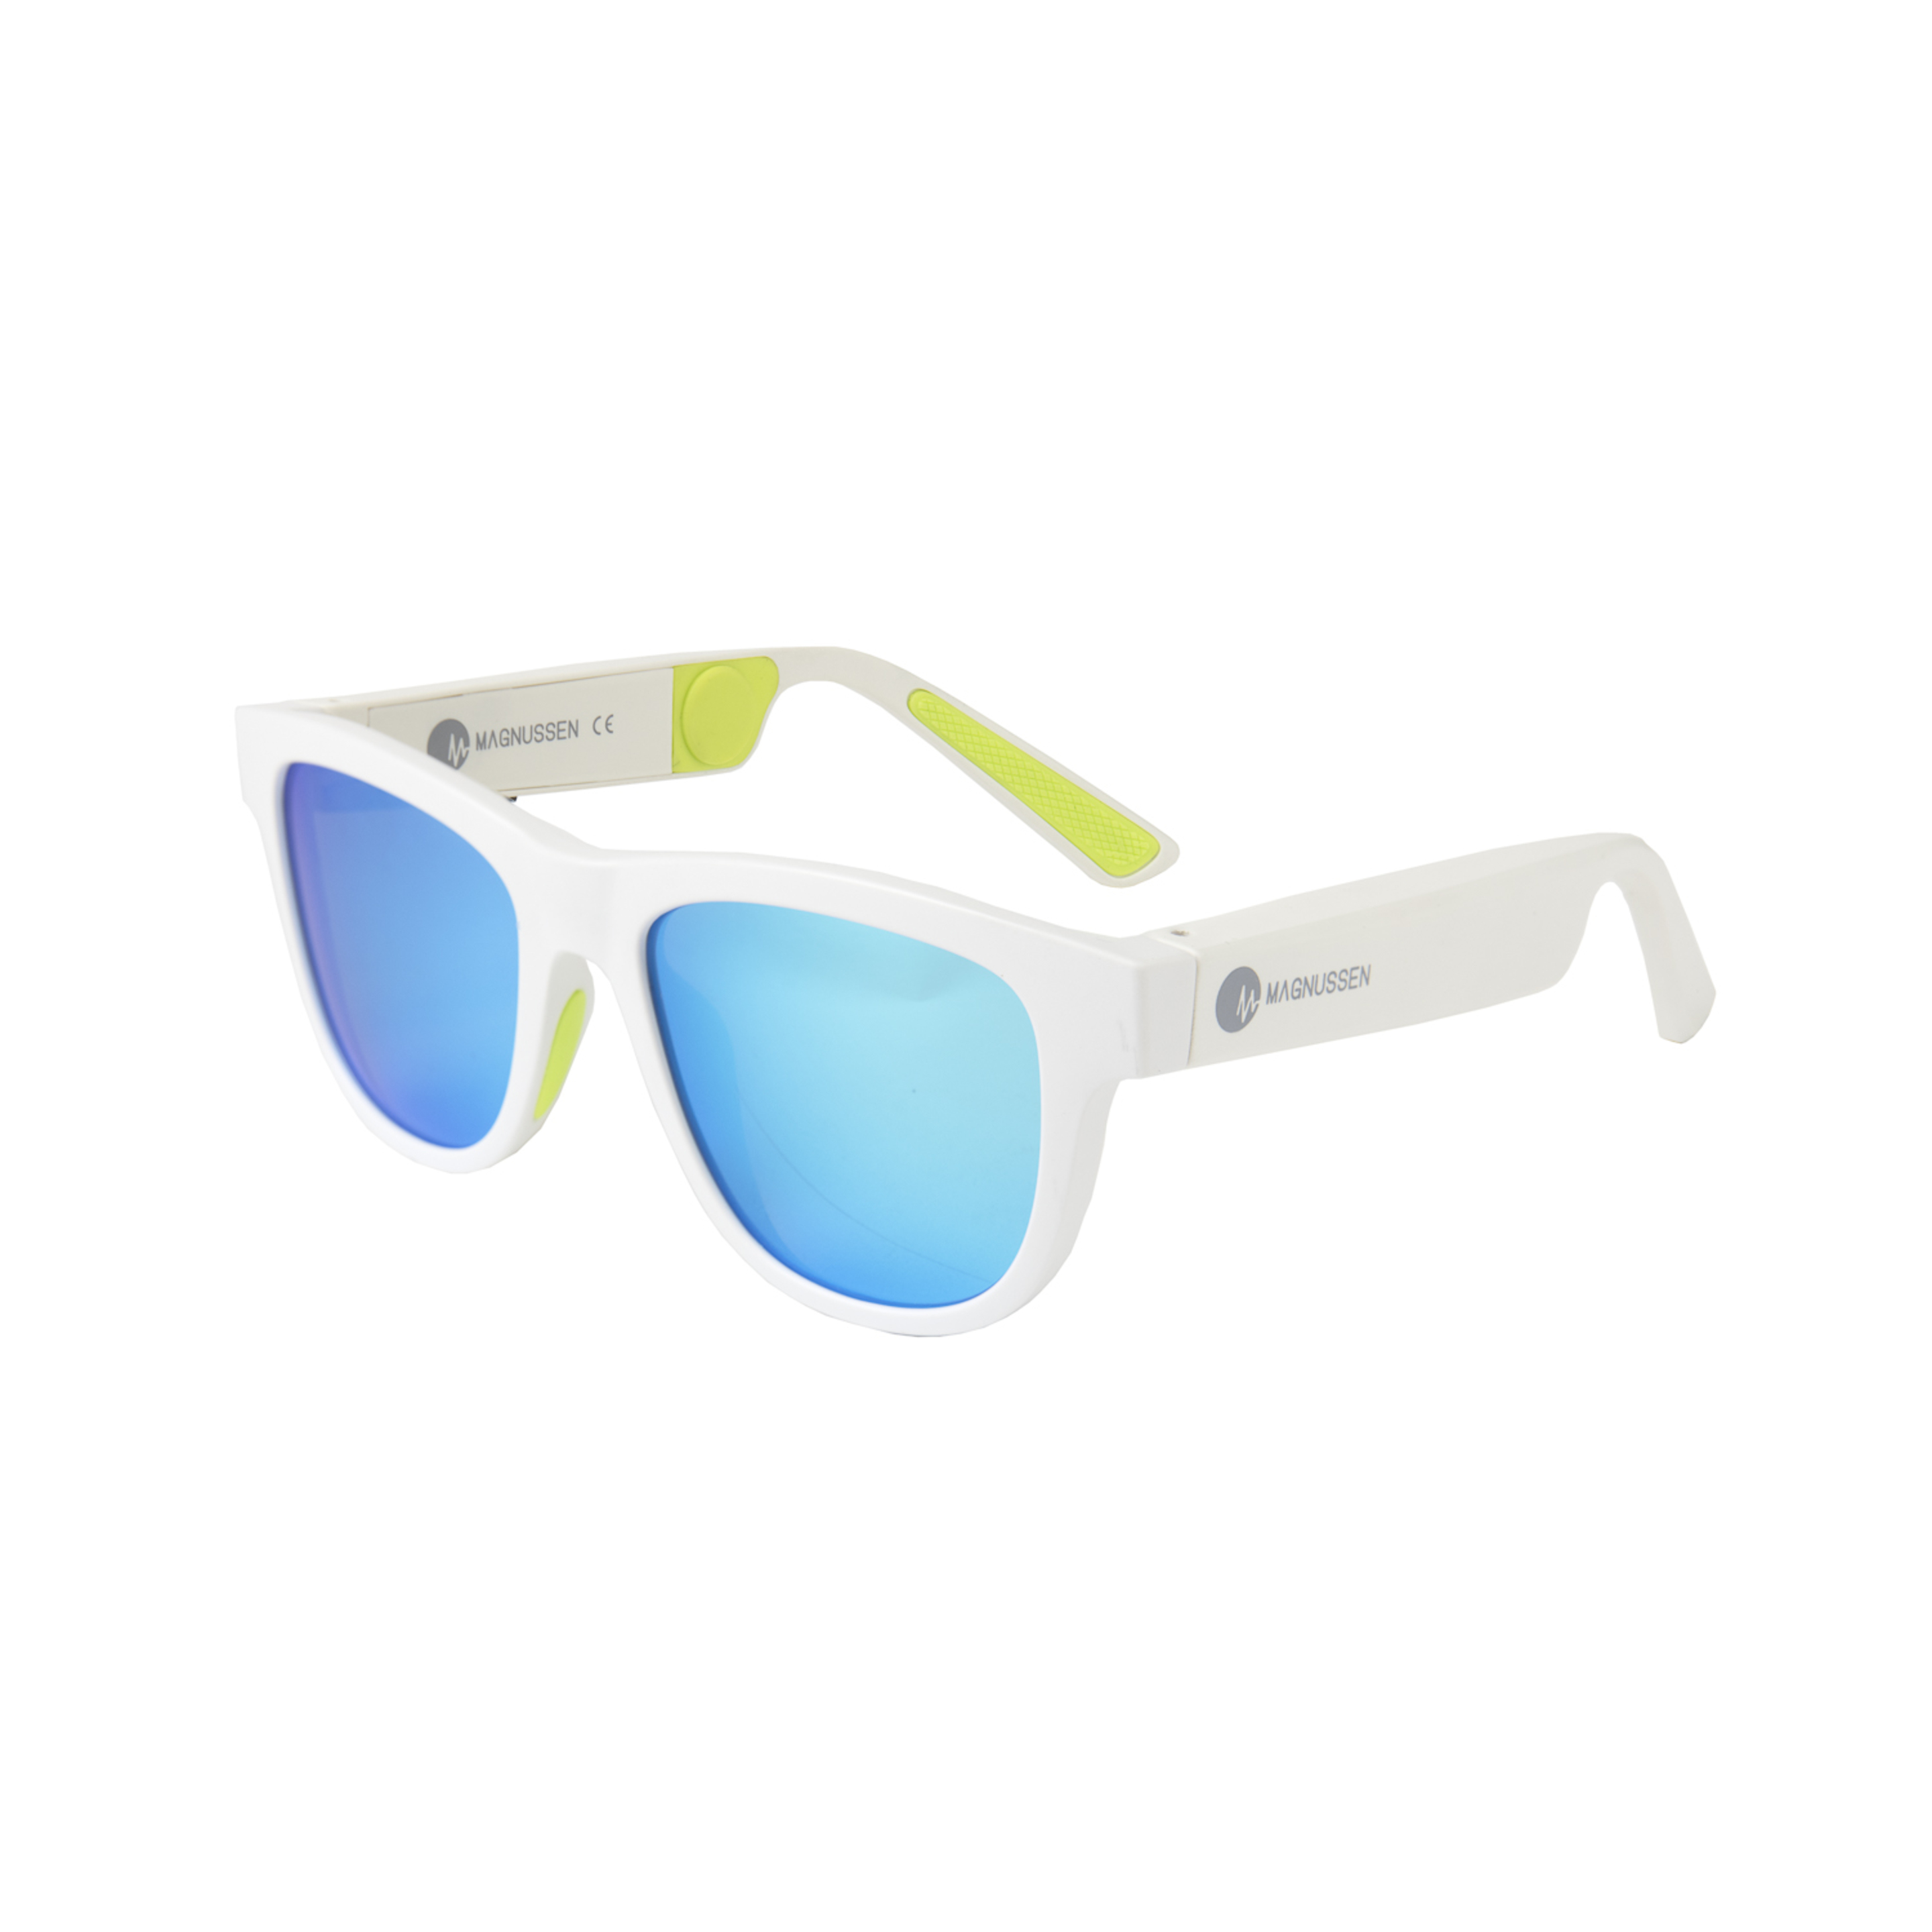 Óculos De Sol Magnussen G1 Bluetooth - Branco/Azul | Sport Zone MKP